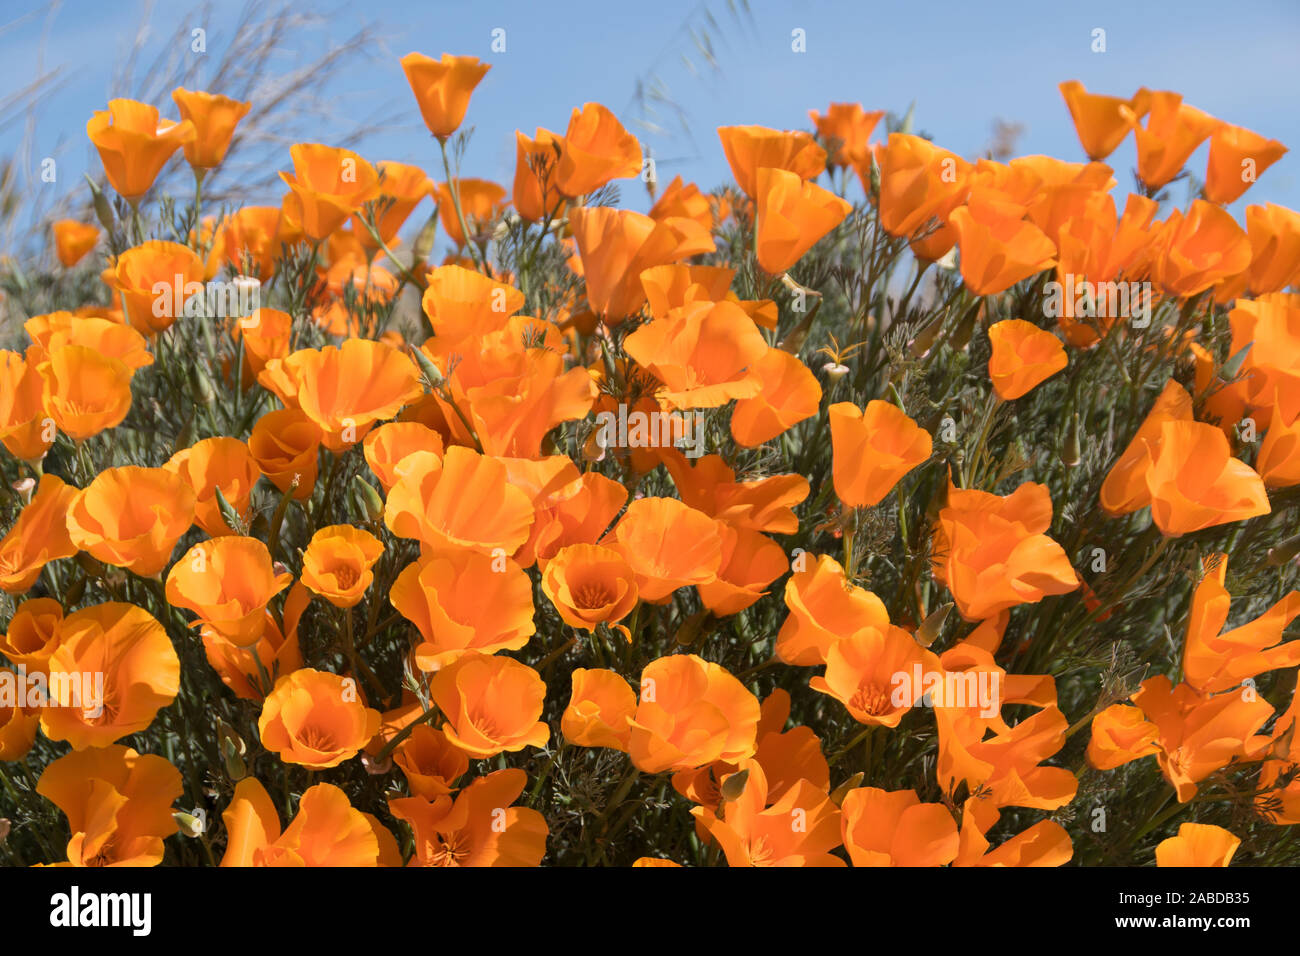 Antelope Valley Poppy Reserve in Kalifornien, Foto aufgenommen im März. Stock Photo